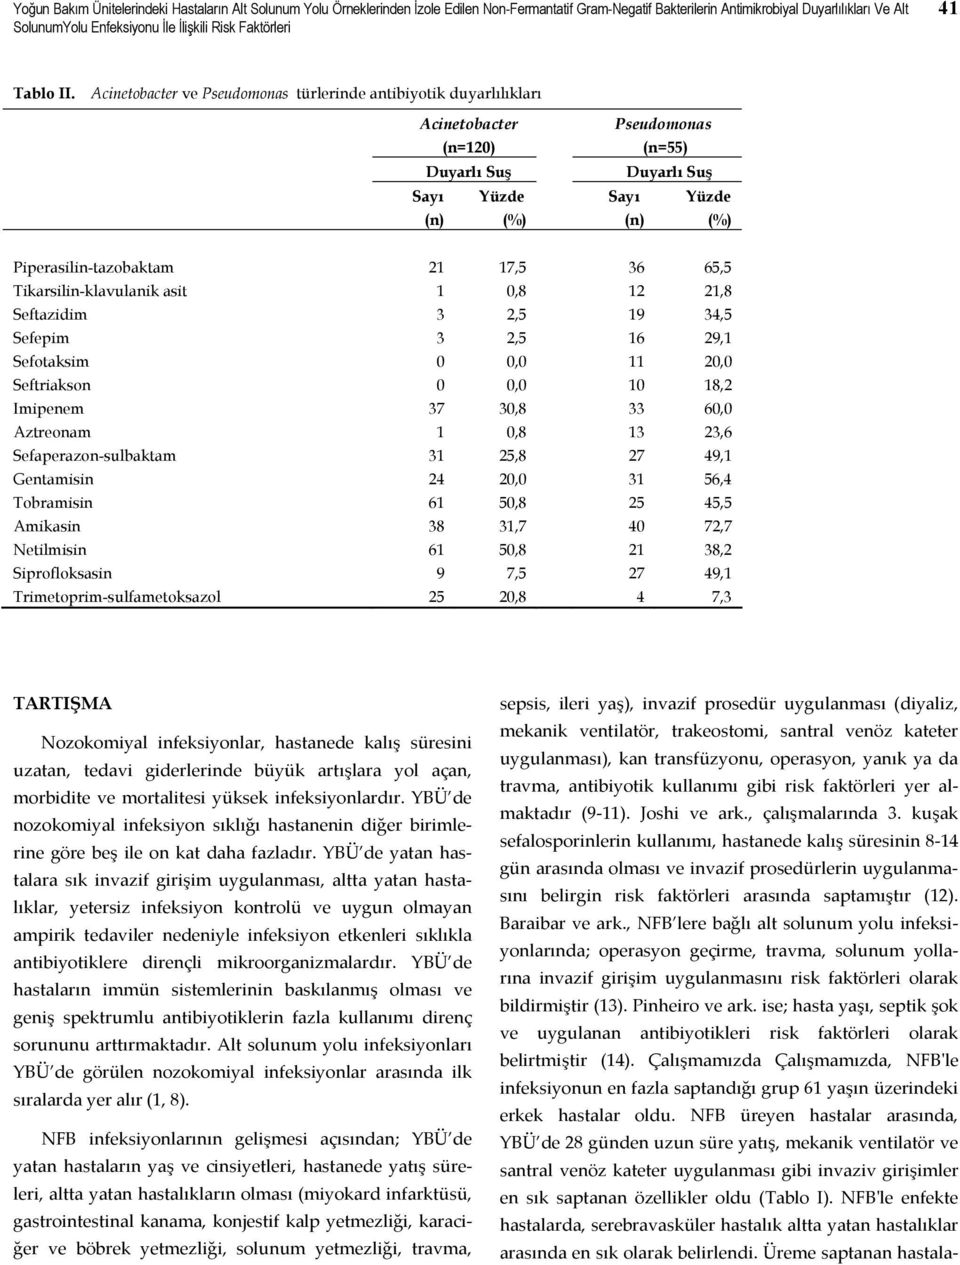 Acinetobacter ve Pseudomonas türlerinde antibiyotik duyarlılıkları Acinetobacter (n=120) Duyarlı Suş Sayı Yüzde (n) (%) Pseudomonas (n=55) Duyarlı Suş Sayı Yüzde (n) (%) Piperasilin-tazobaktam 21